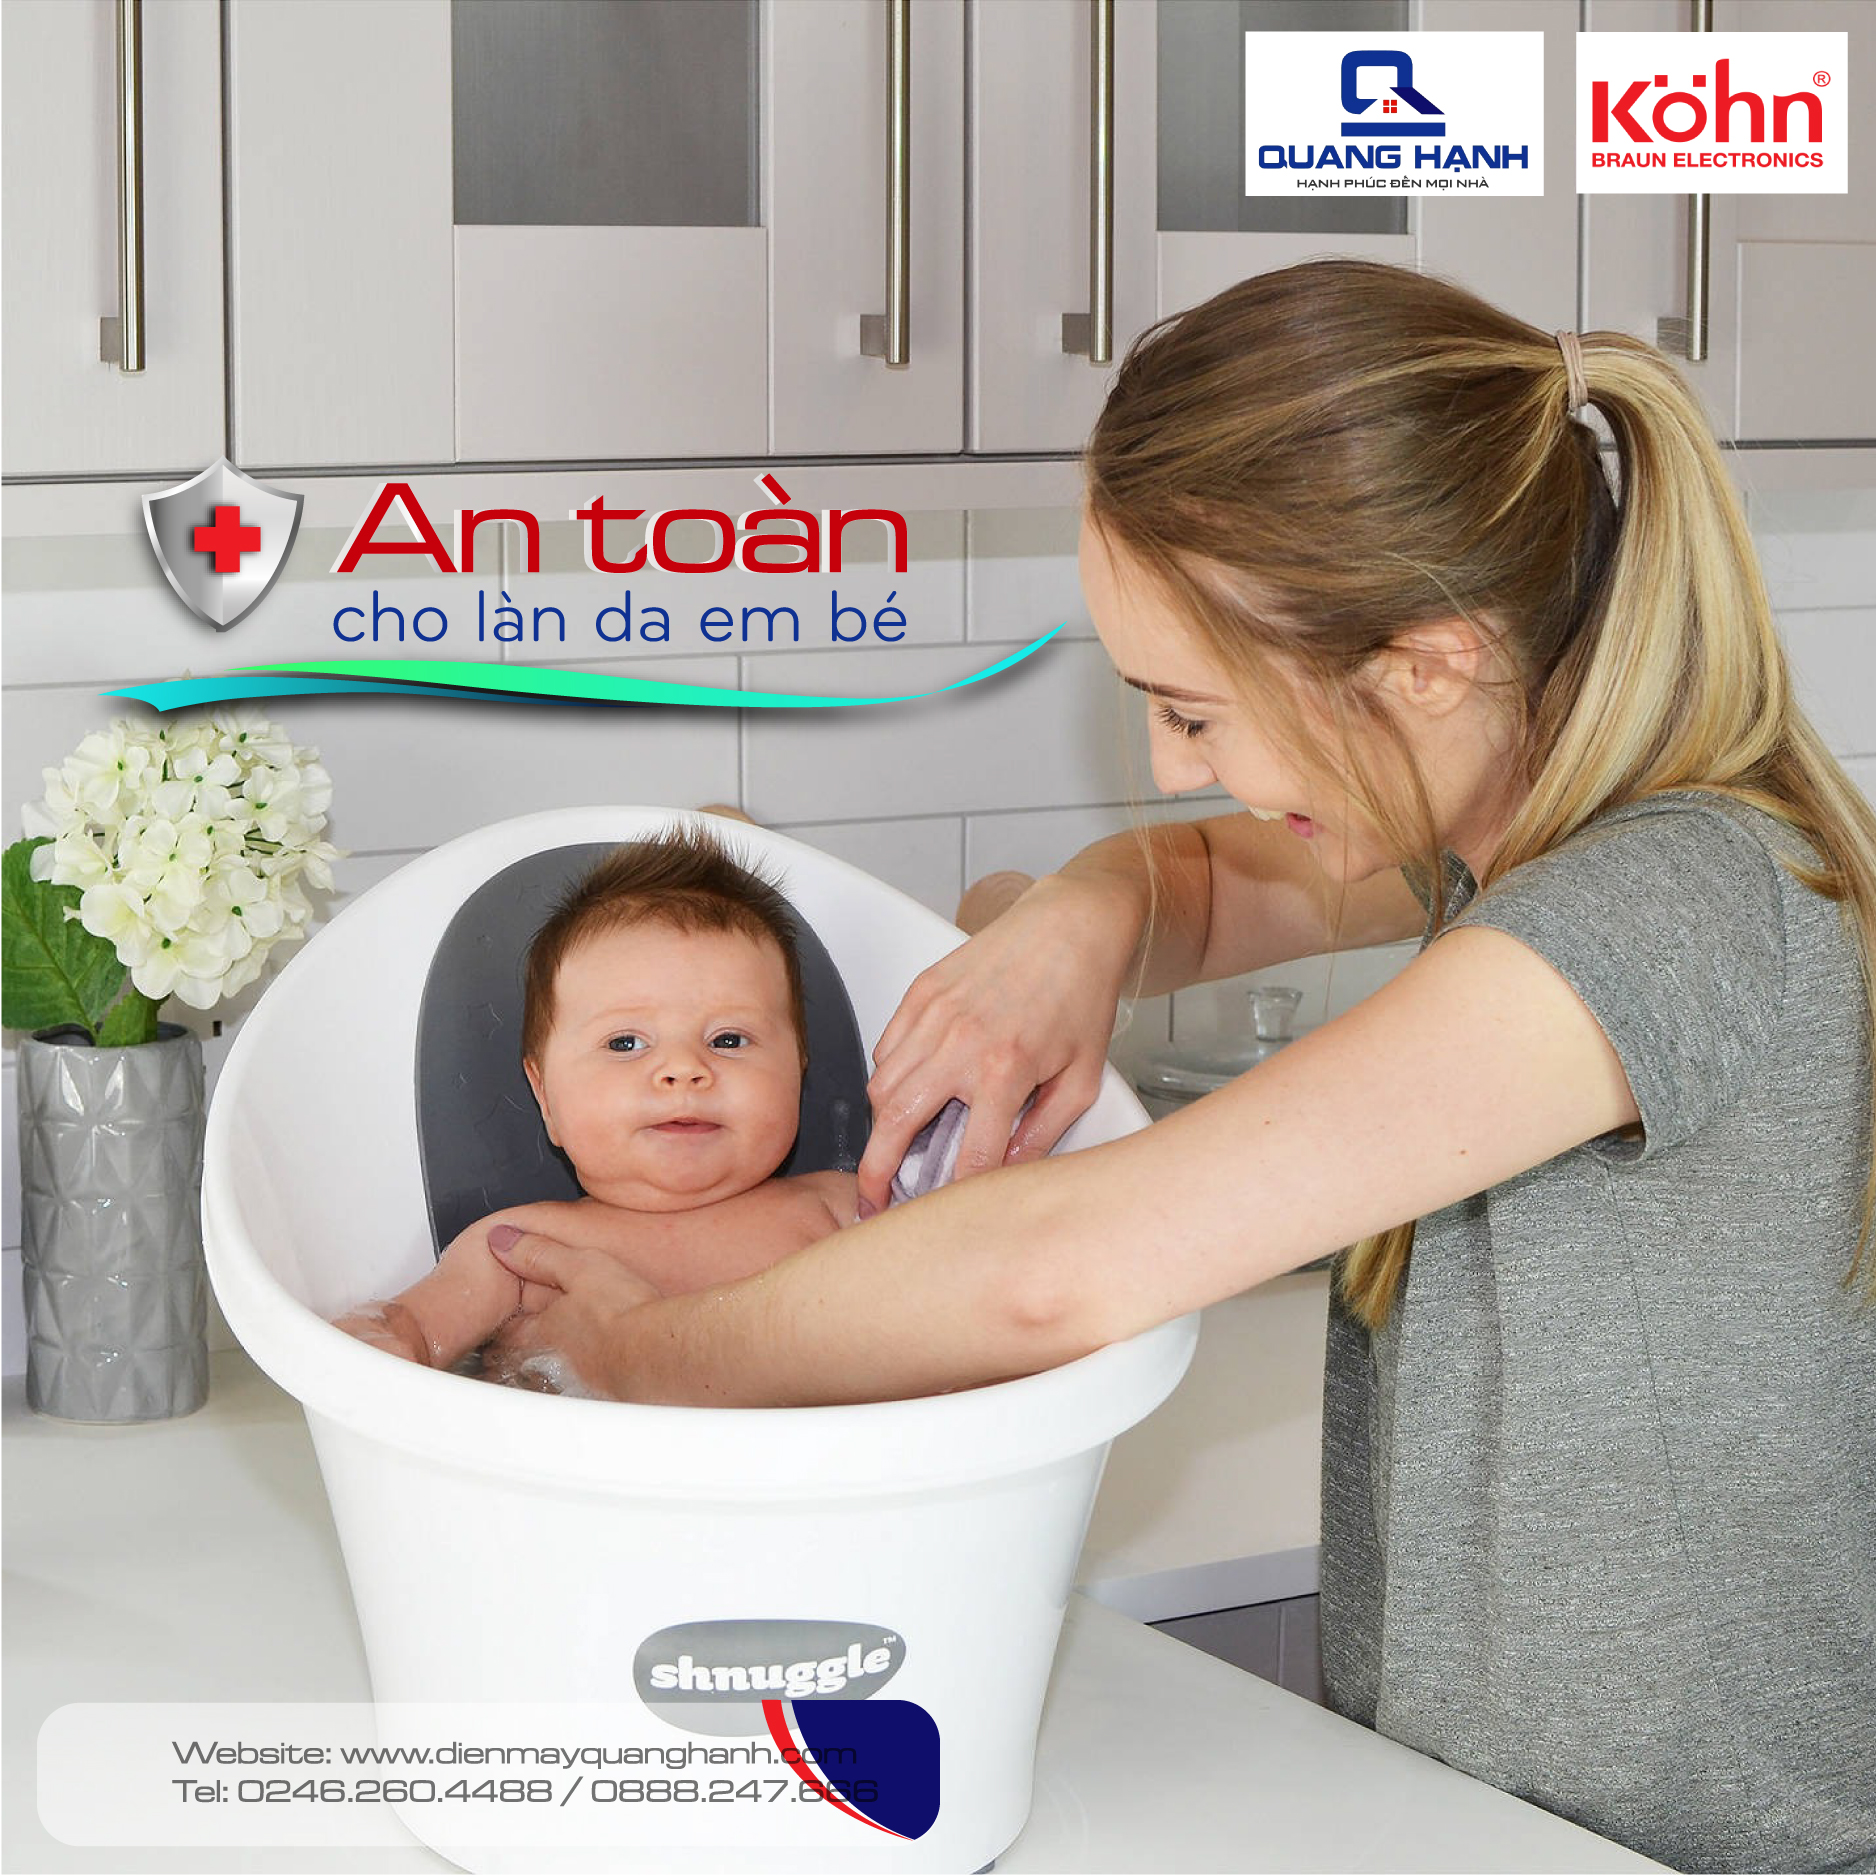 đèn sưởi hồng ngoại Braun Kohn K150  an toàn cho trẻ sơ sinh